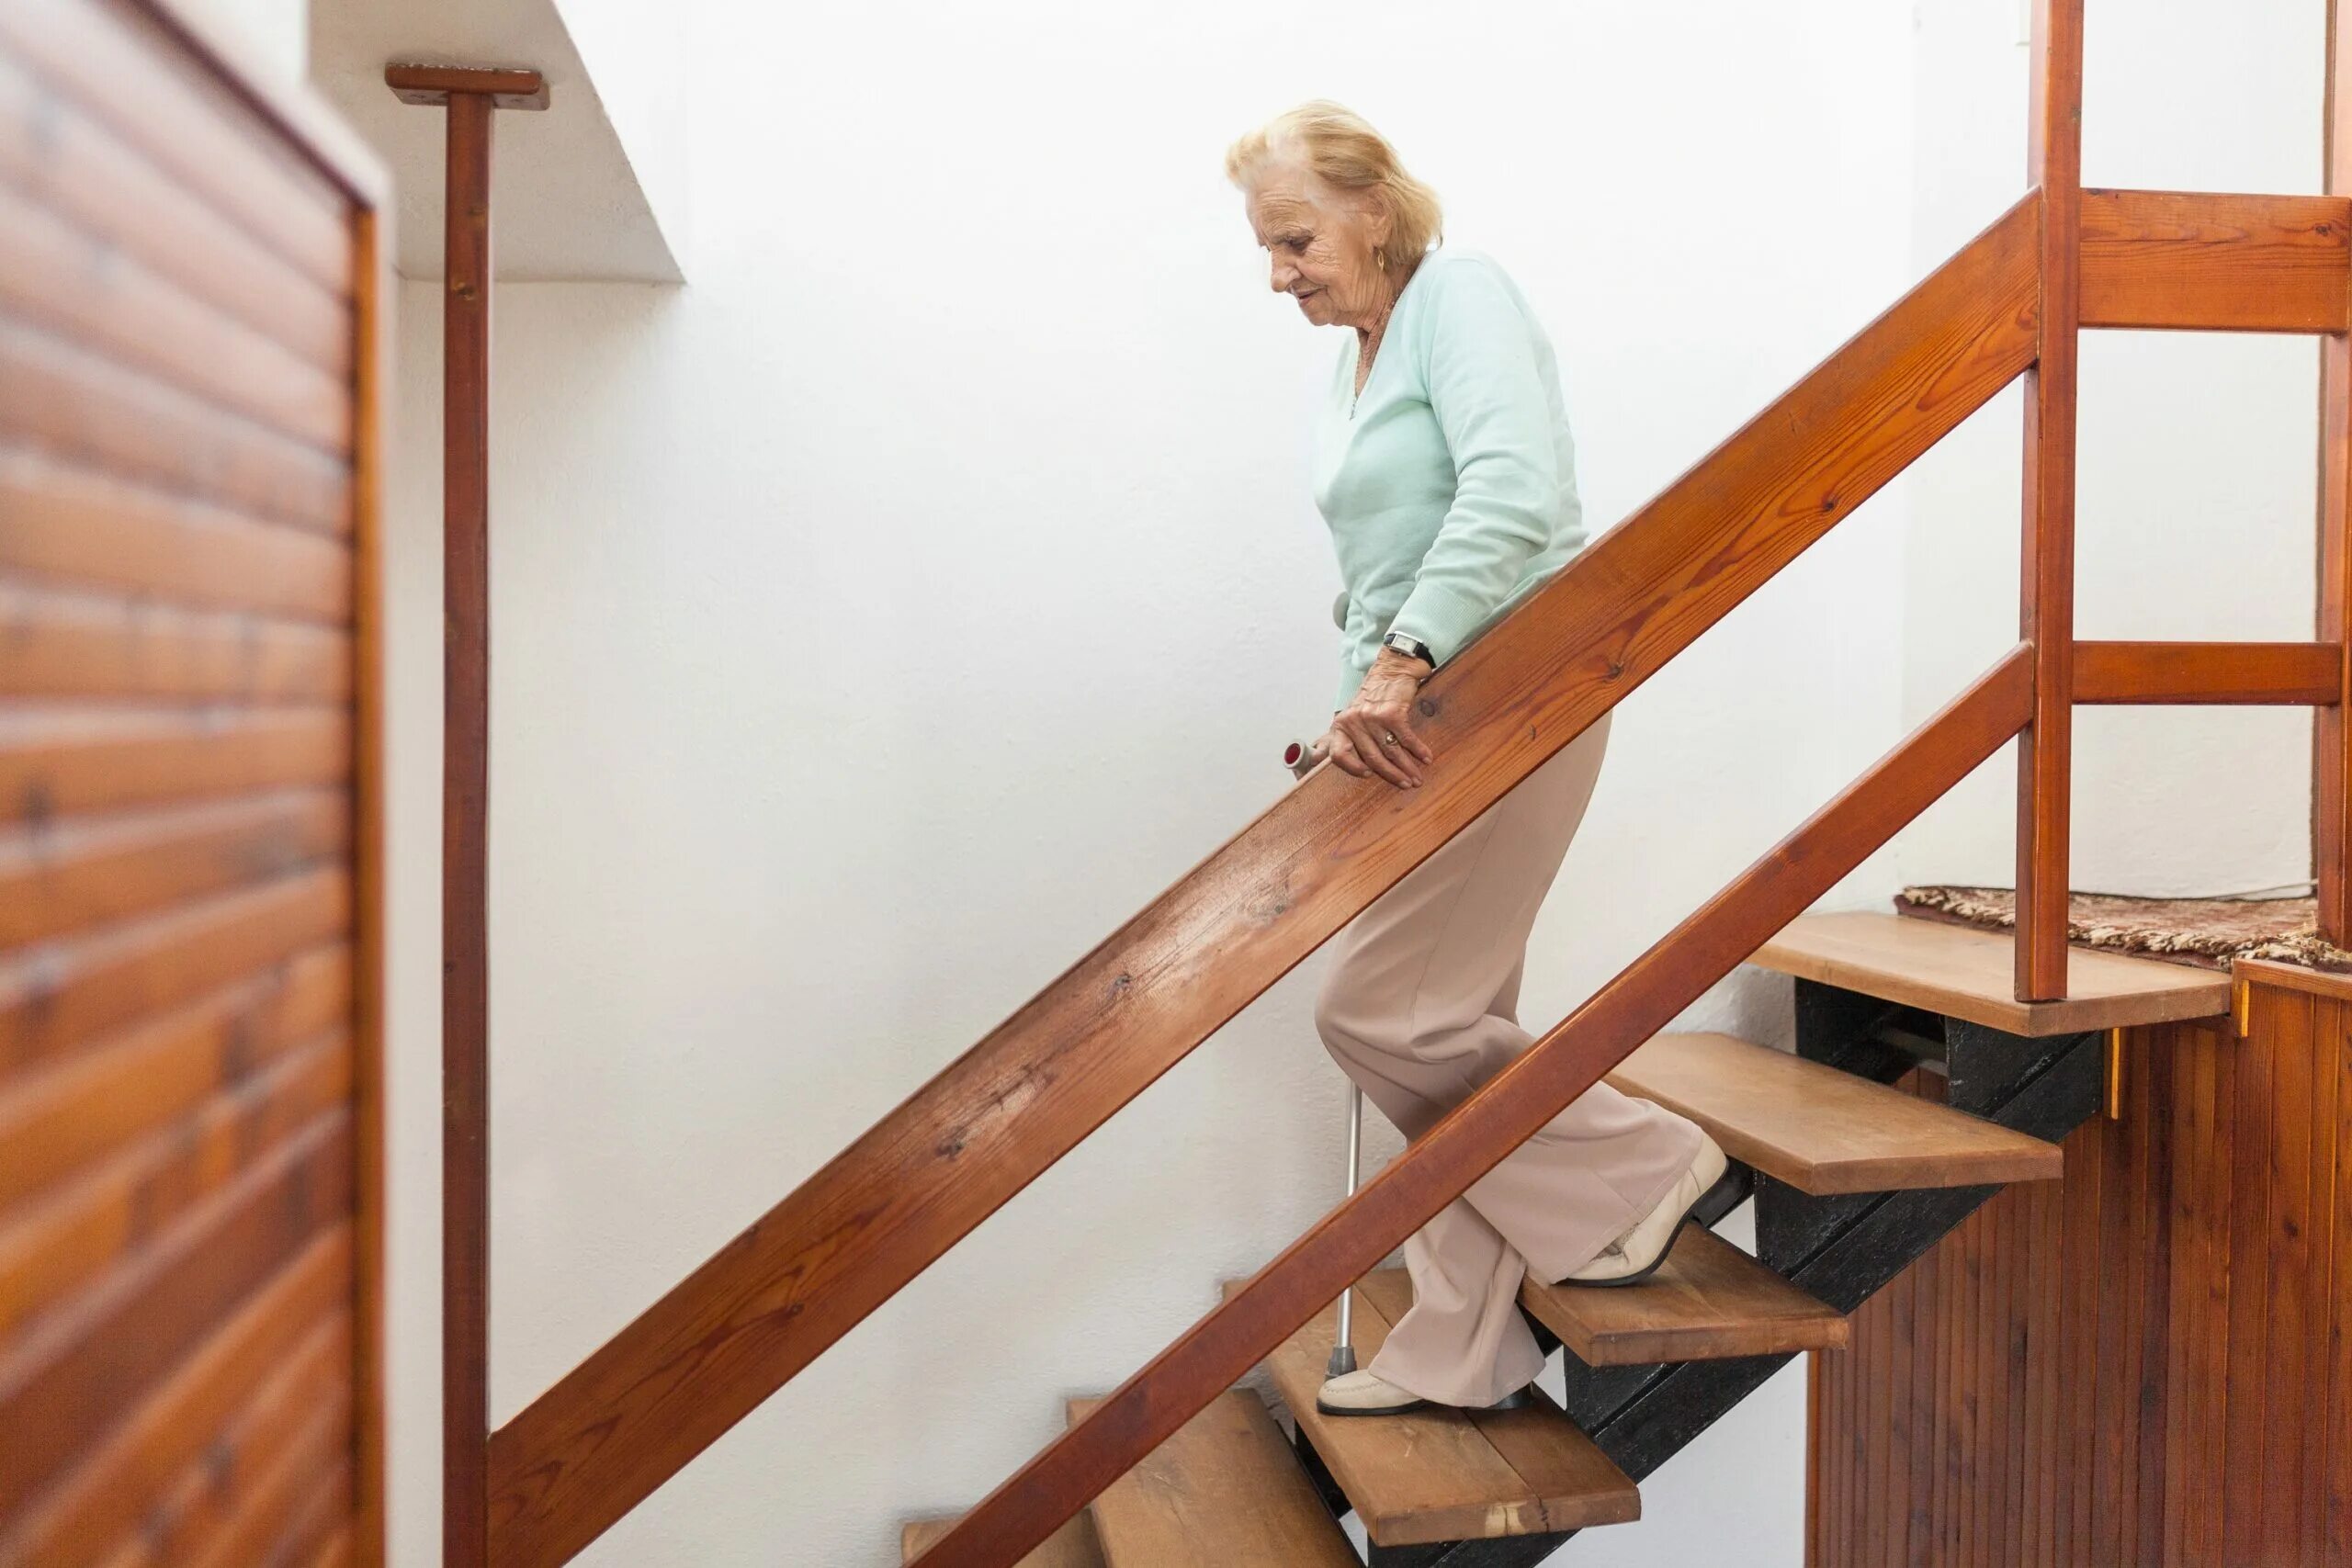 По маленькой лестнице поднялись. Лестница для пожилых. Спускается с лестницы. Пенсионер на лестнице. Бабушка на лестнице.